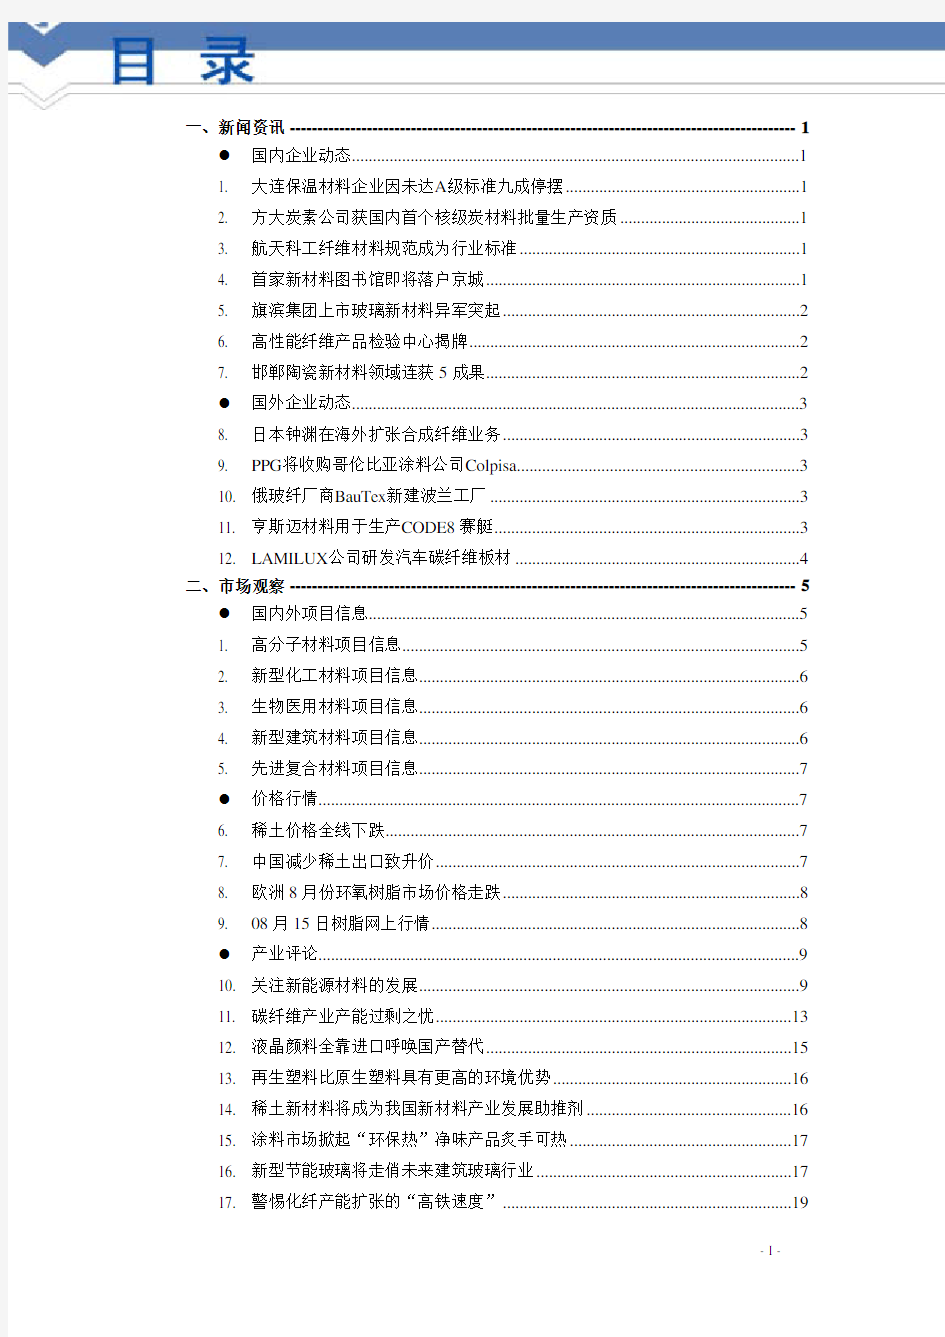 佑佐新材料行业简报 2011-005期(总第005期)